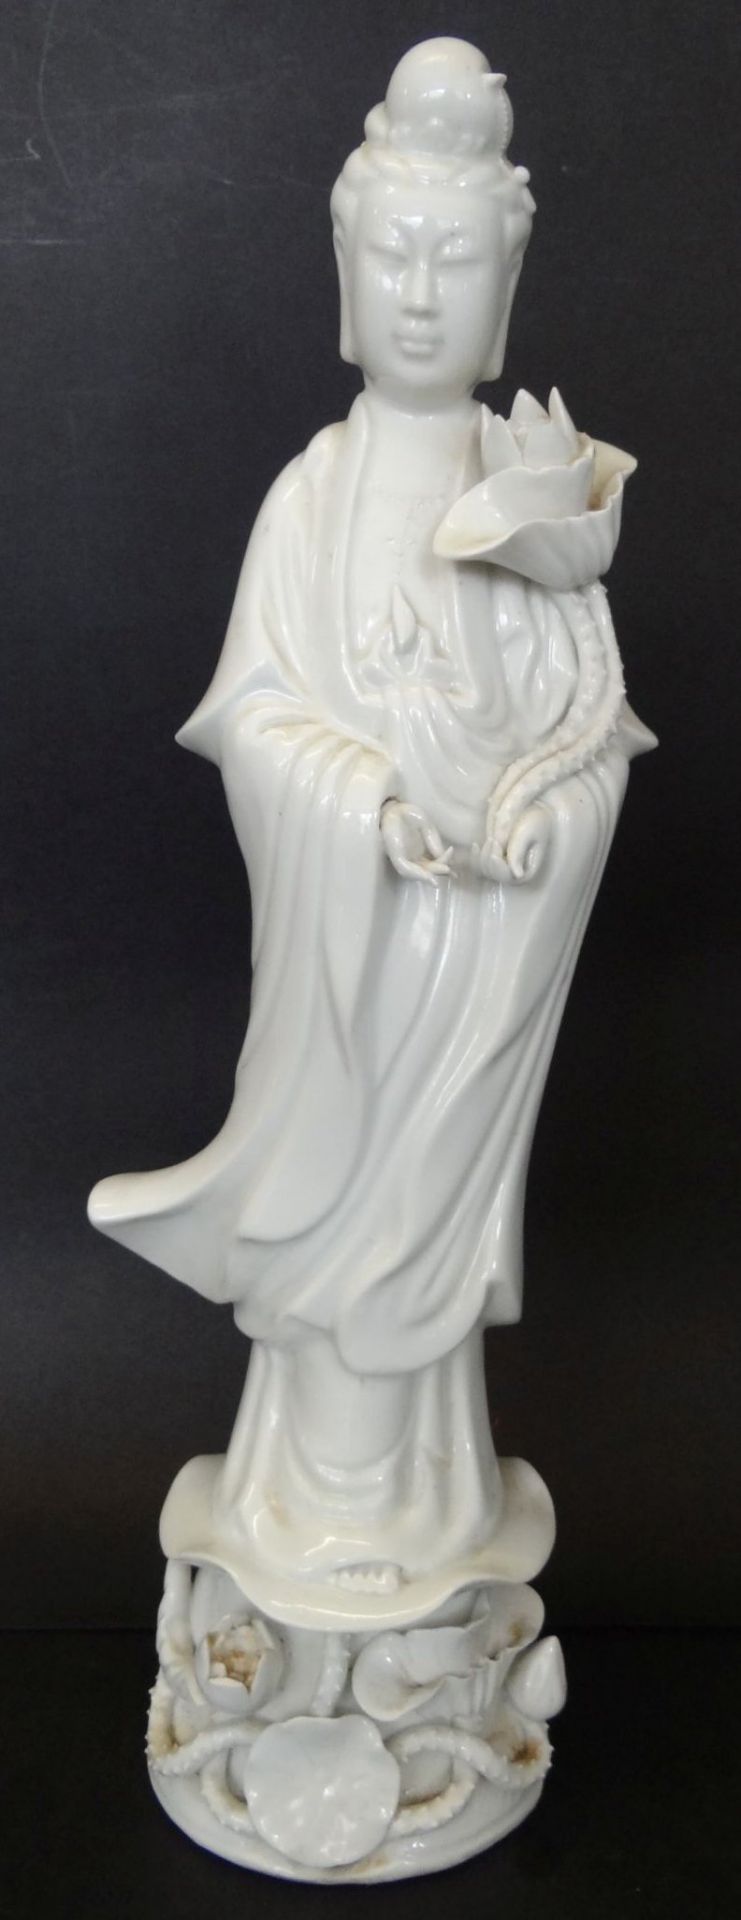 Porzellanfigur,Guan Yin, die chinesische Göttin der Barmherzigkeit, des Mitgefühls, der Güte und der - Bild 3 aus 8